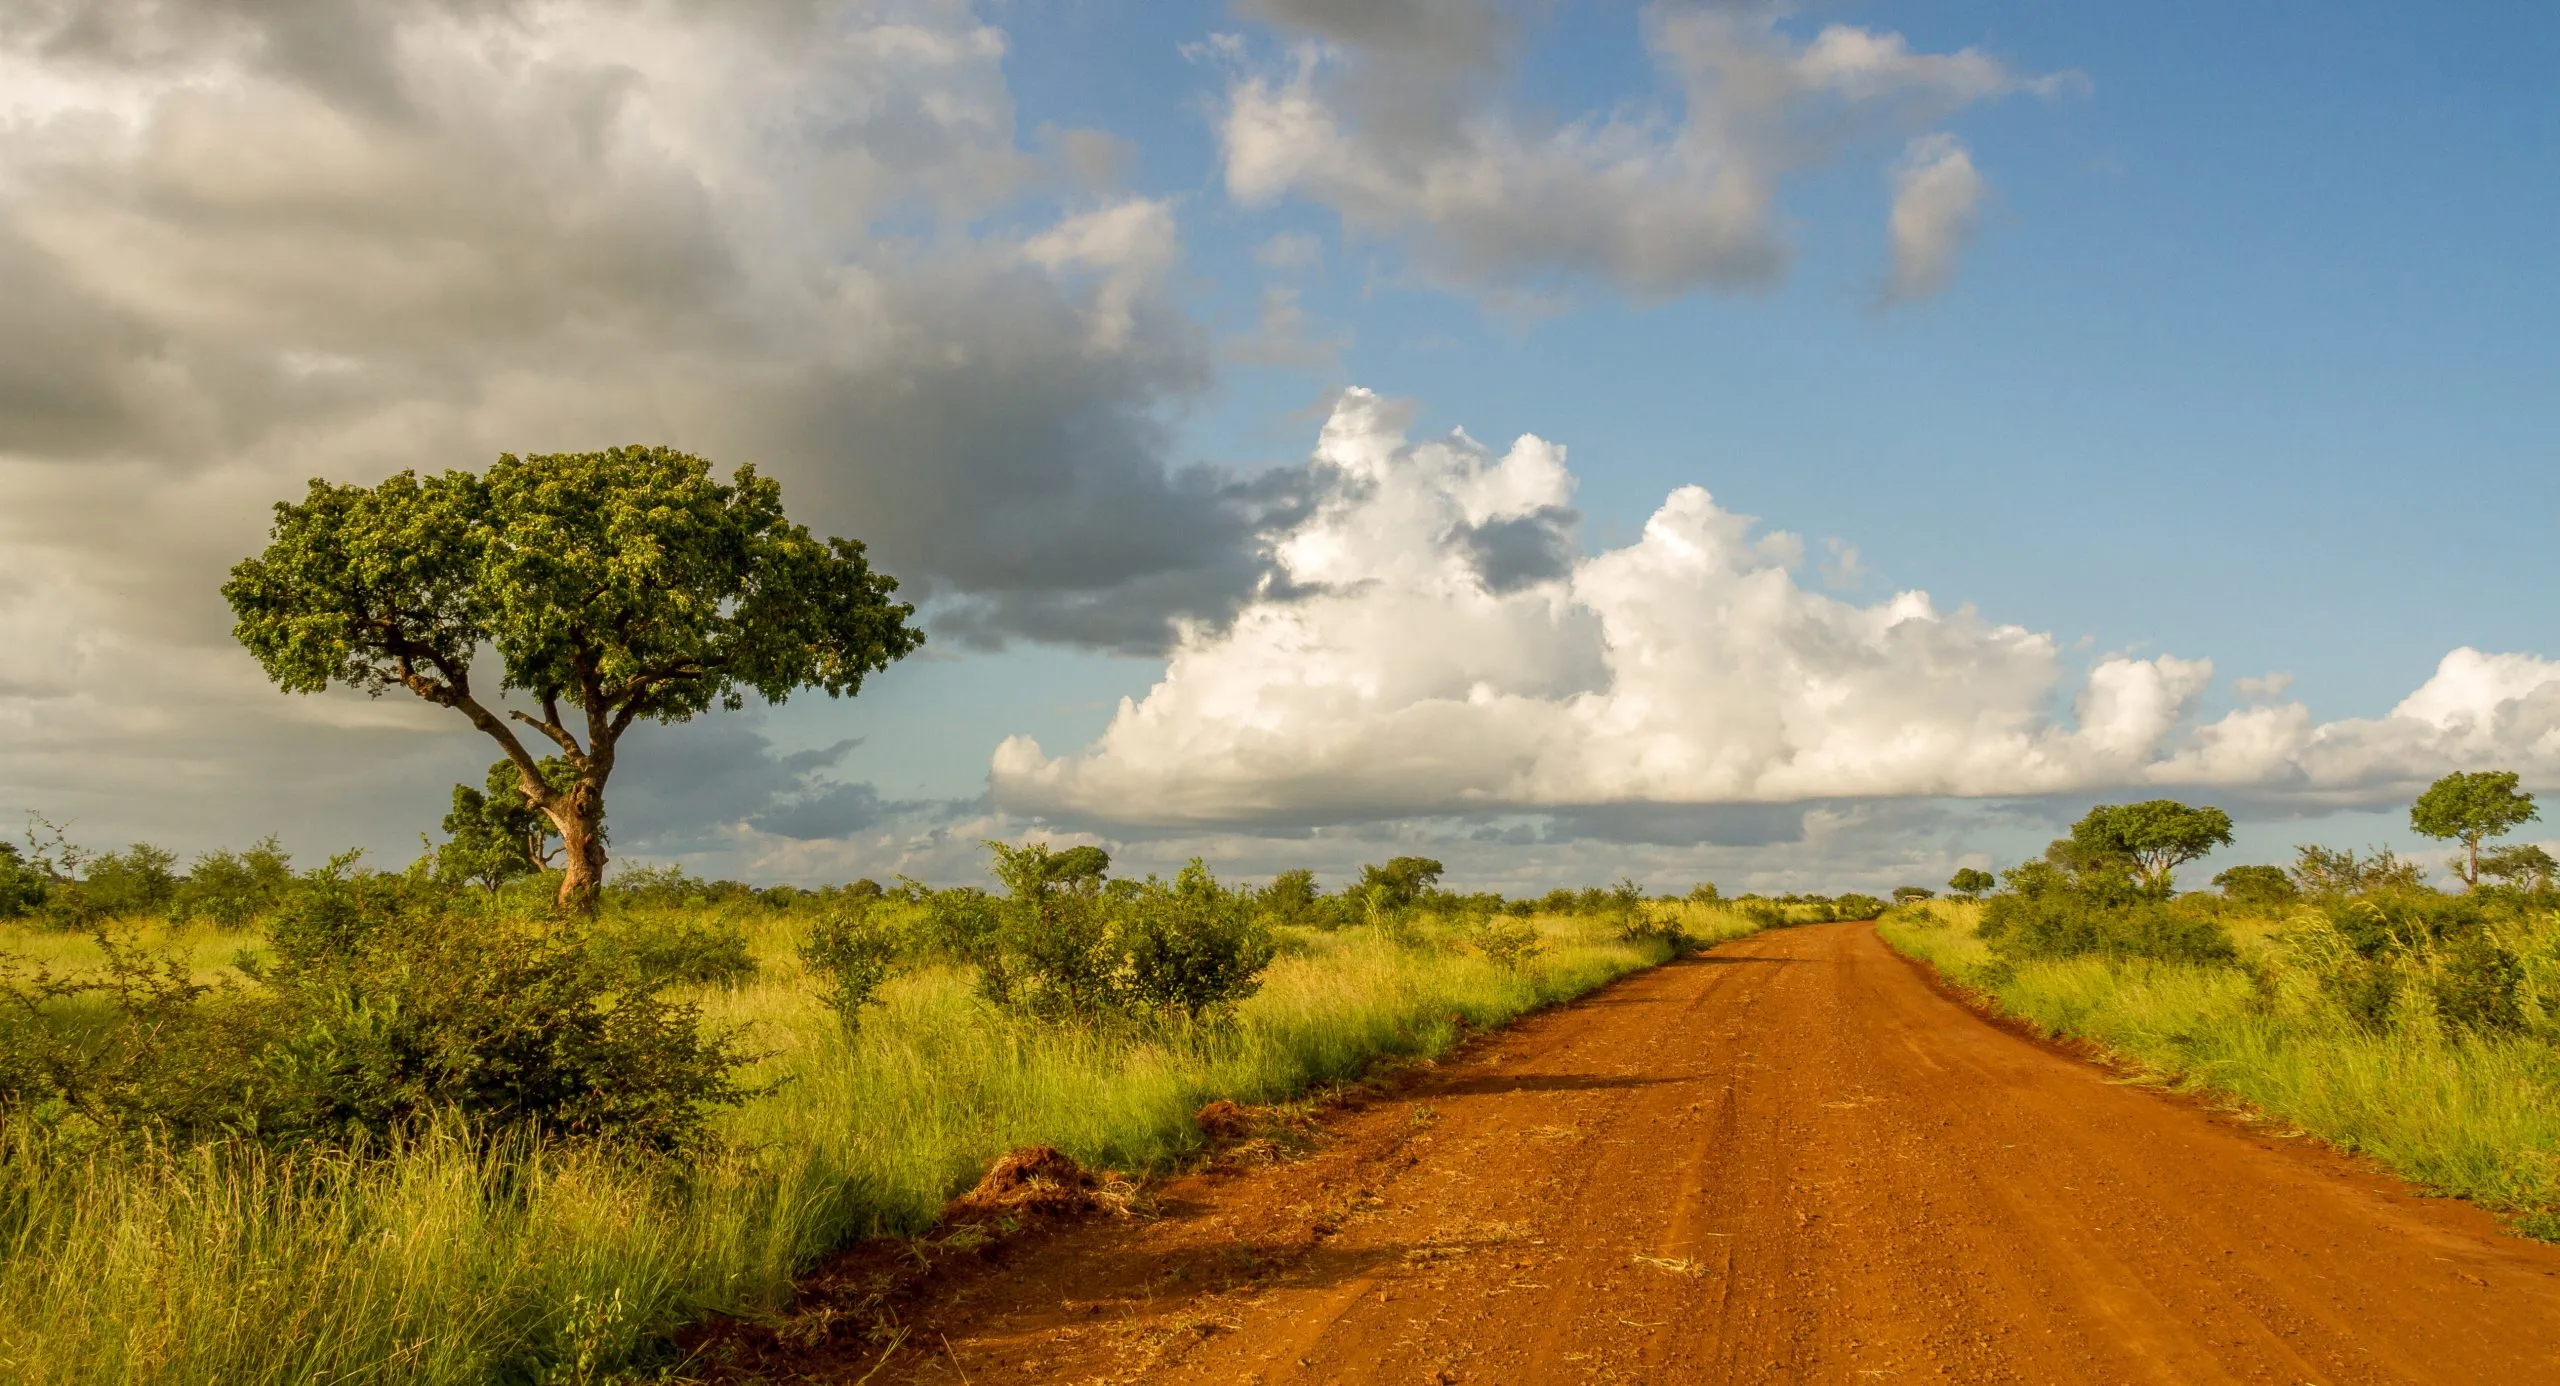 Paesaggio con strada sterrata e savana africana nel Parco Nazionale Kruger in Sudafrica immagine in formato orizzontale